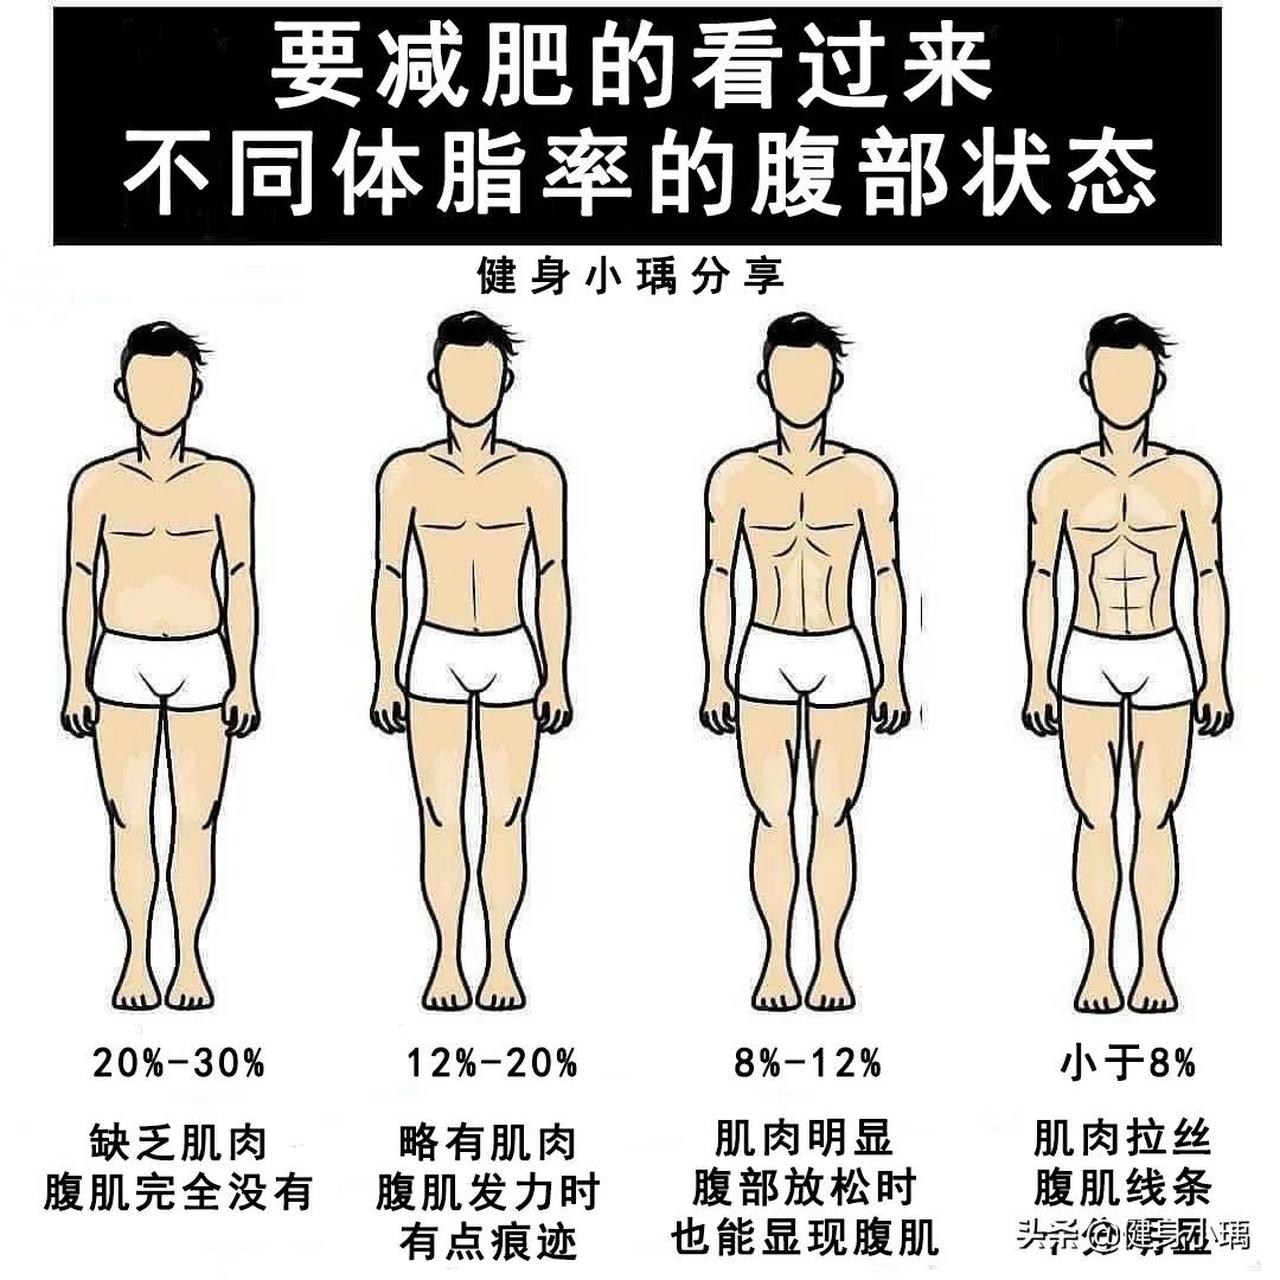 不同体脂率的腹部状态是什么样?